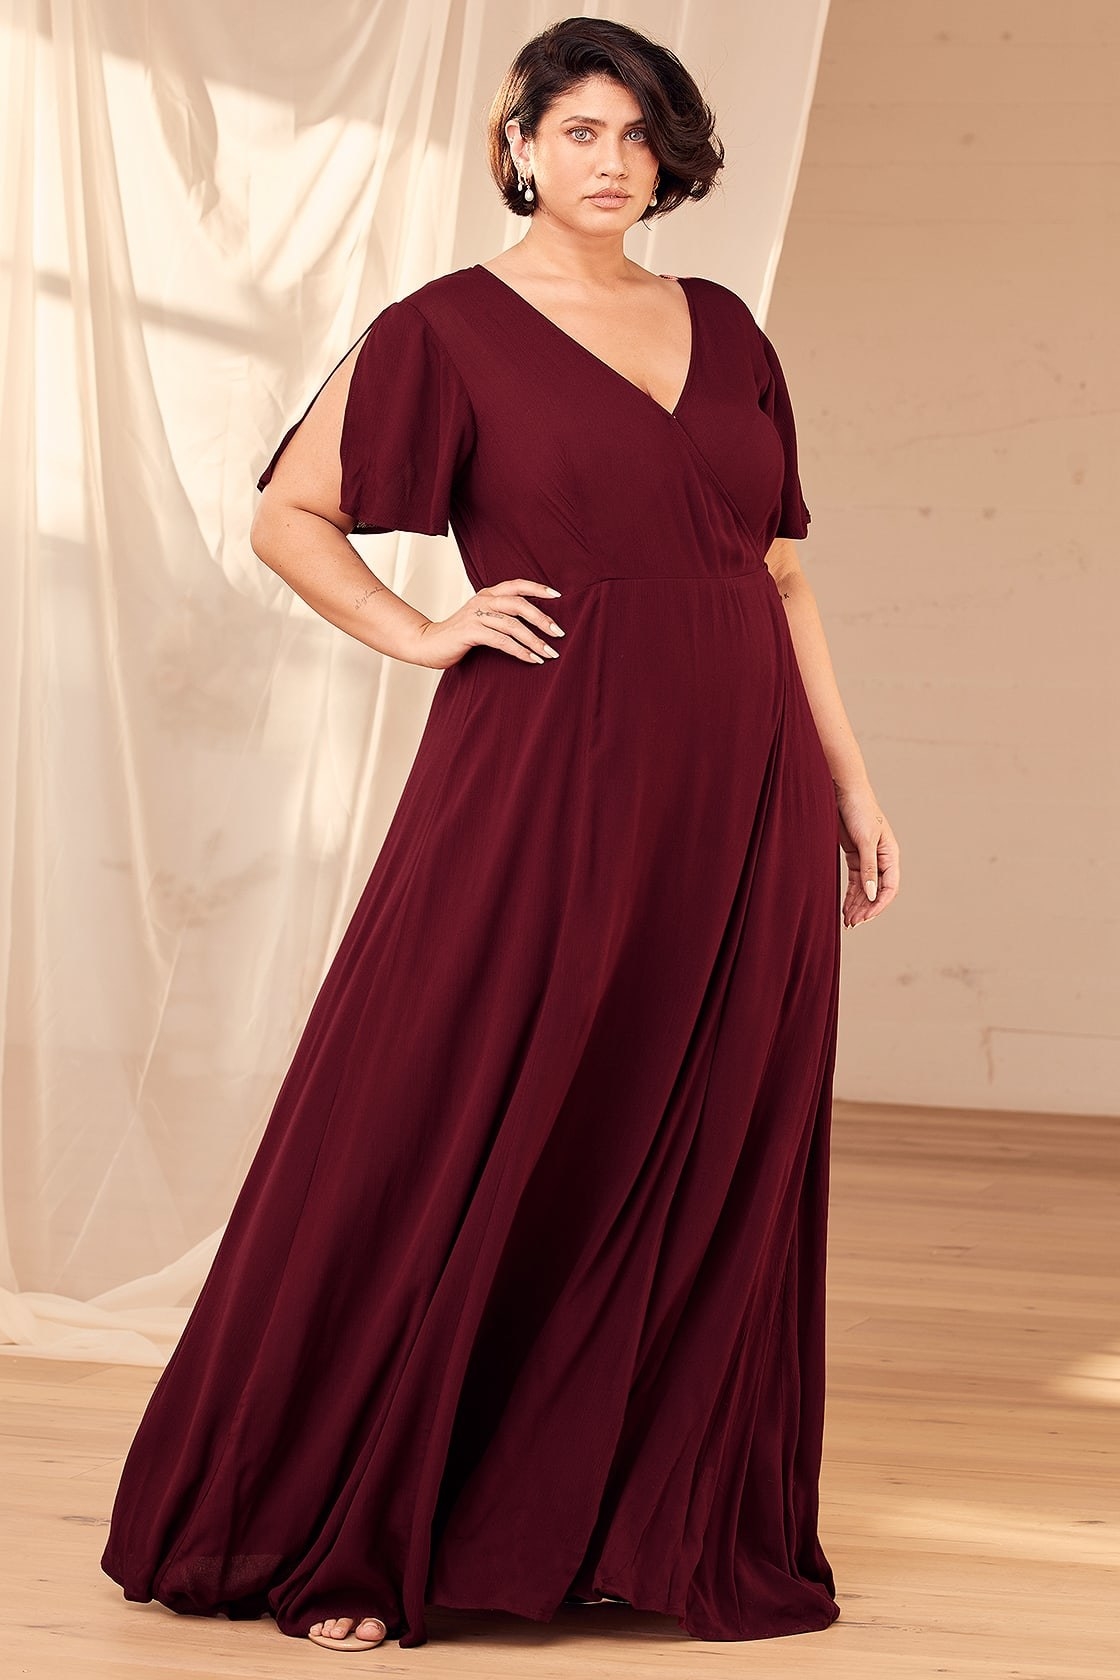 Model is wearing a burgundy wrap dress